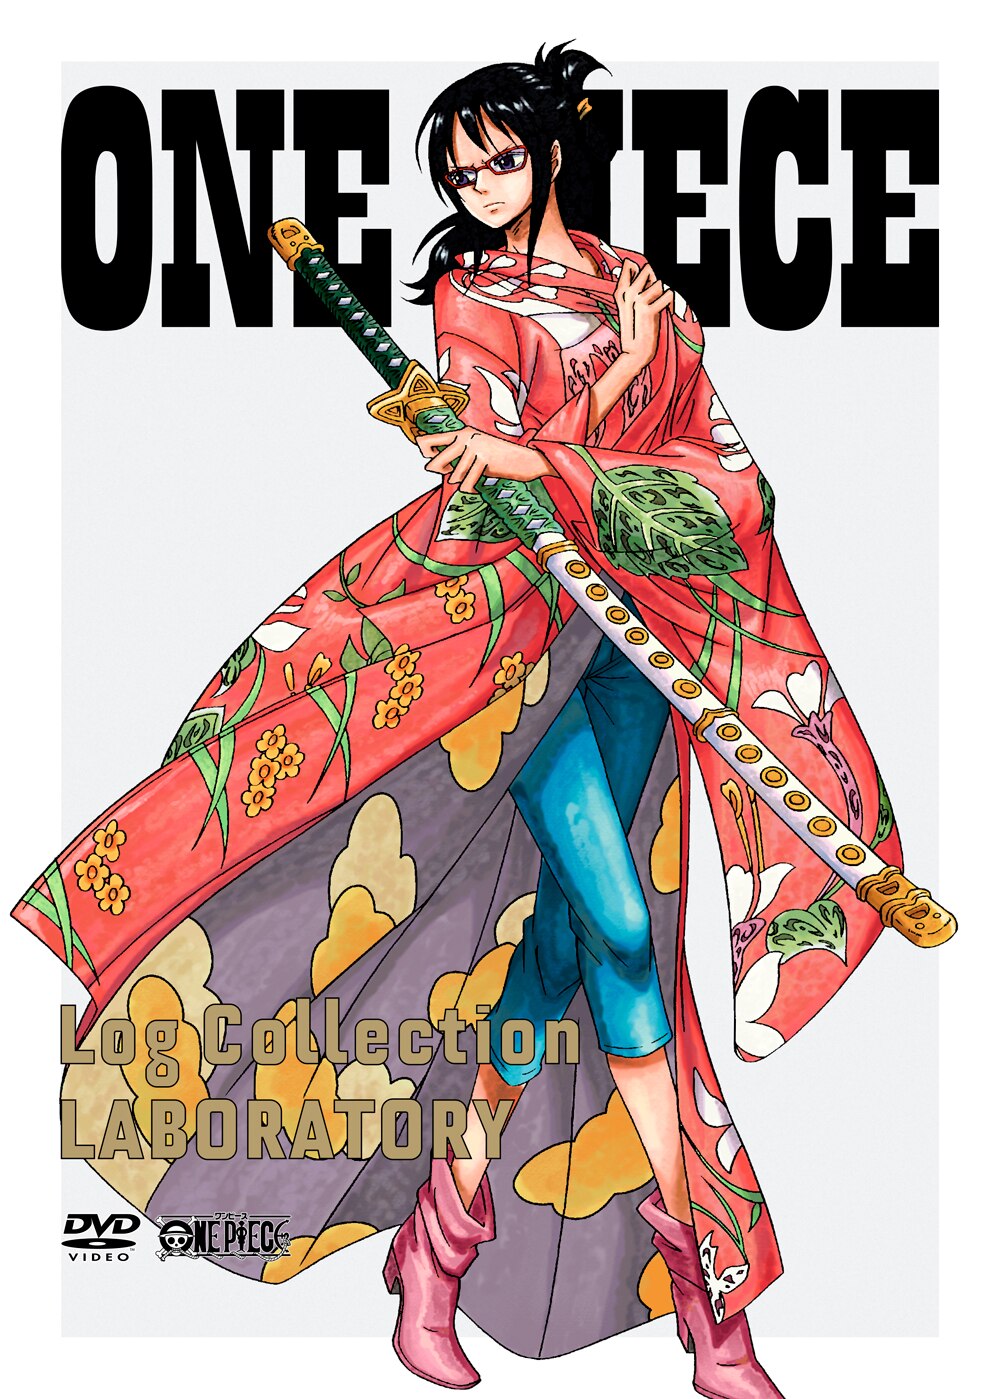 Log Collectionシリーズ パンクハザード編 2巻 Laboratory 8 22発売 News One Piece ワンピース Dvd公式サイト